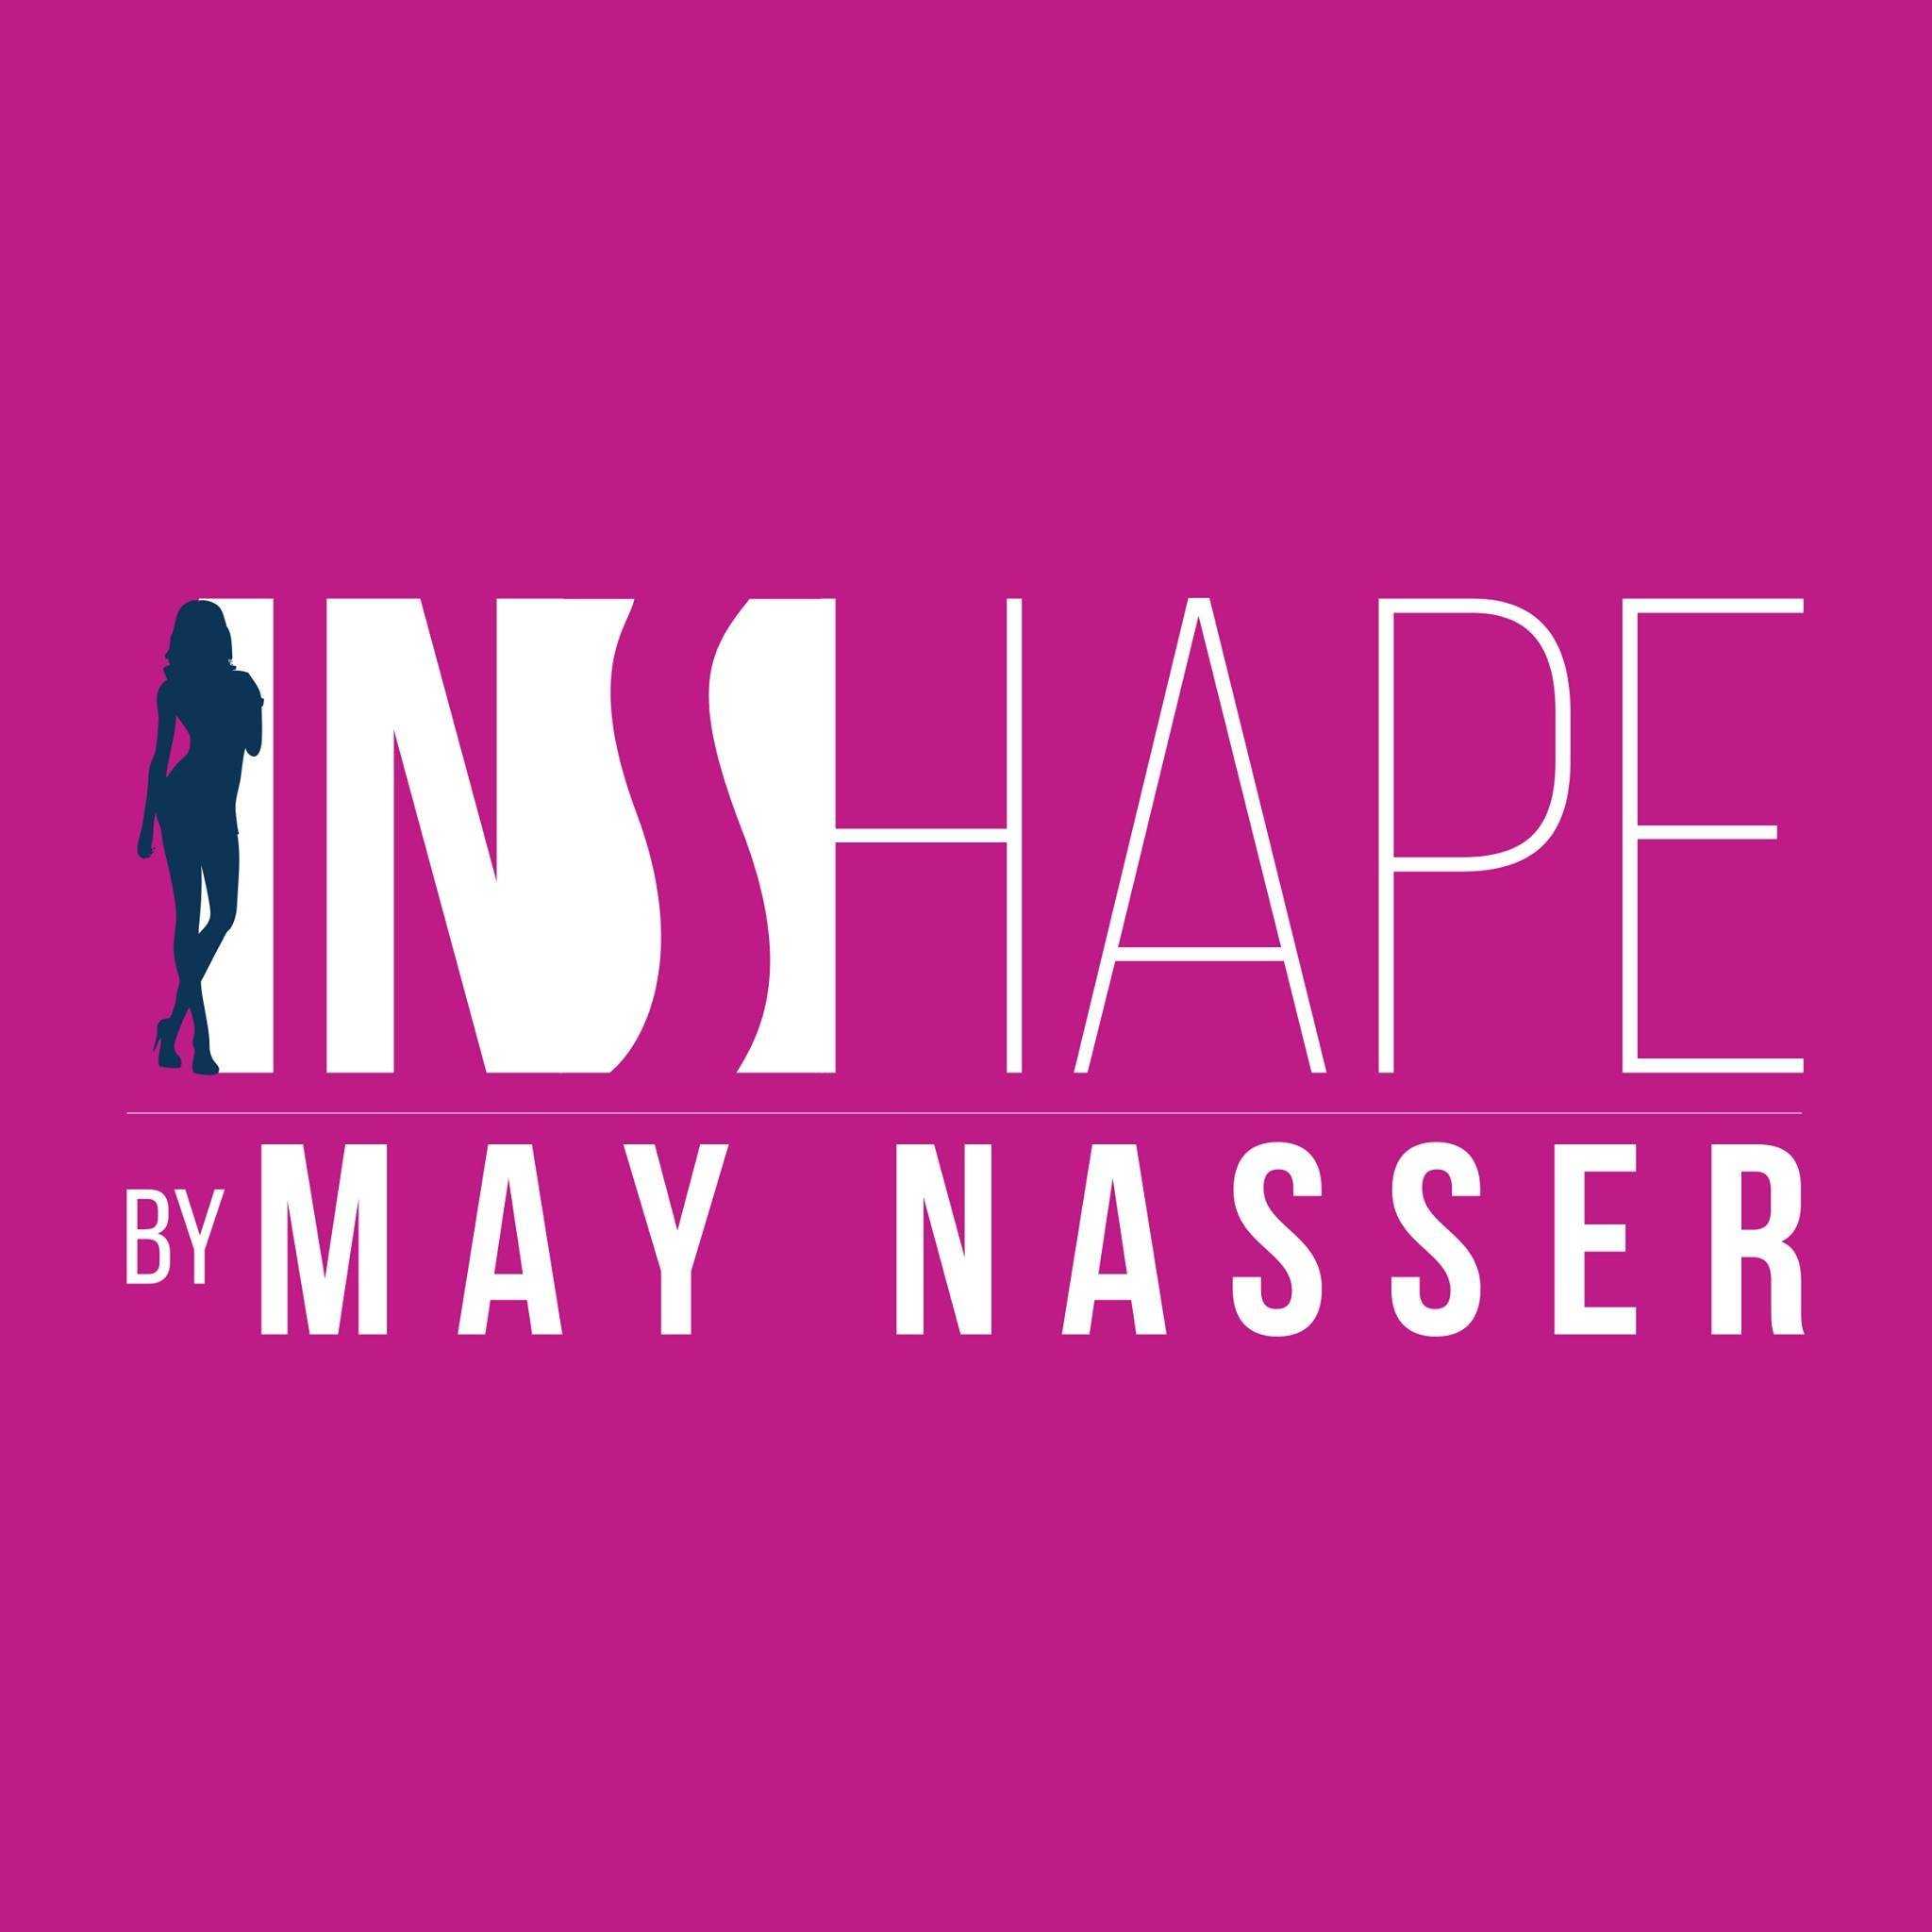 May Nasser